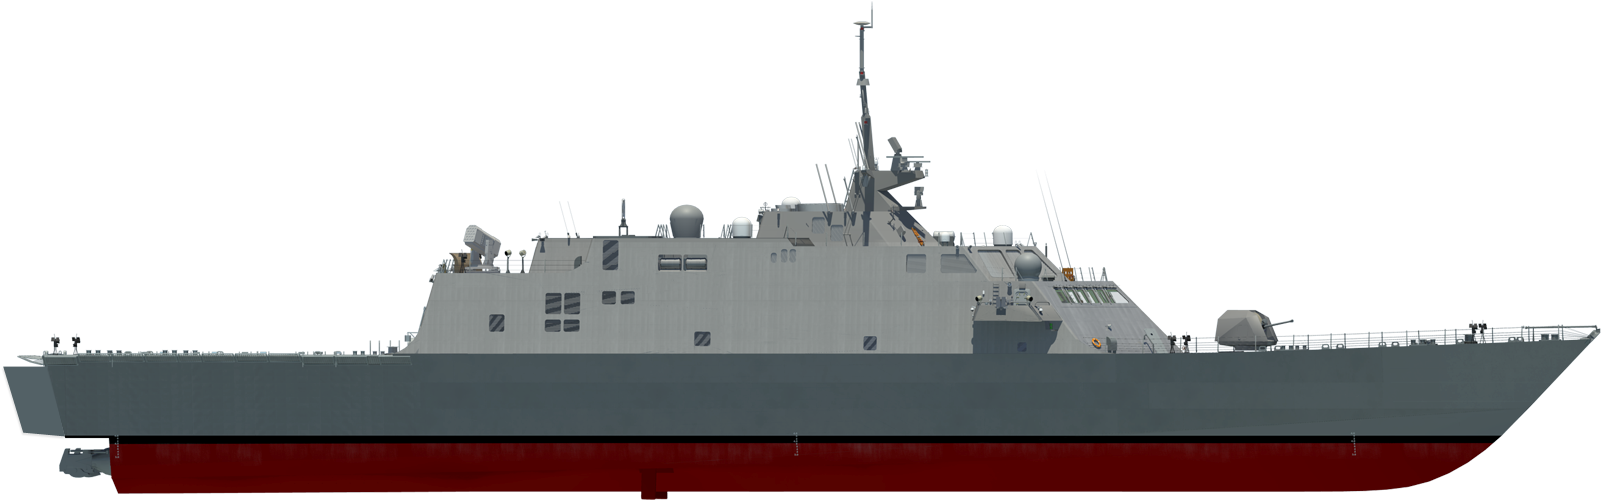 Modern Warship Profile PNG image